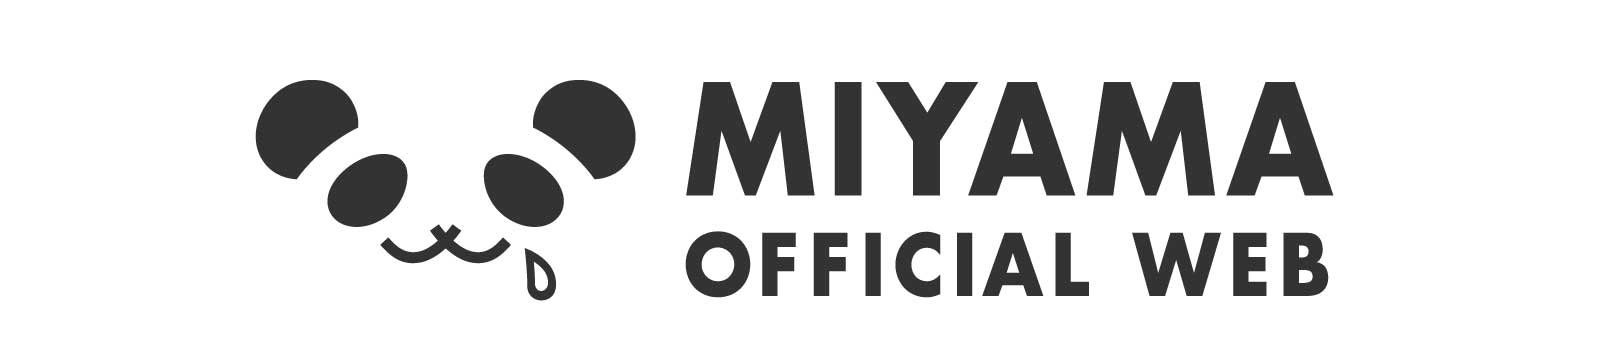 ミヤマ OFFICIAL WEB